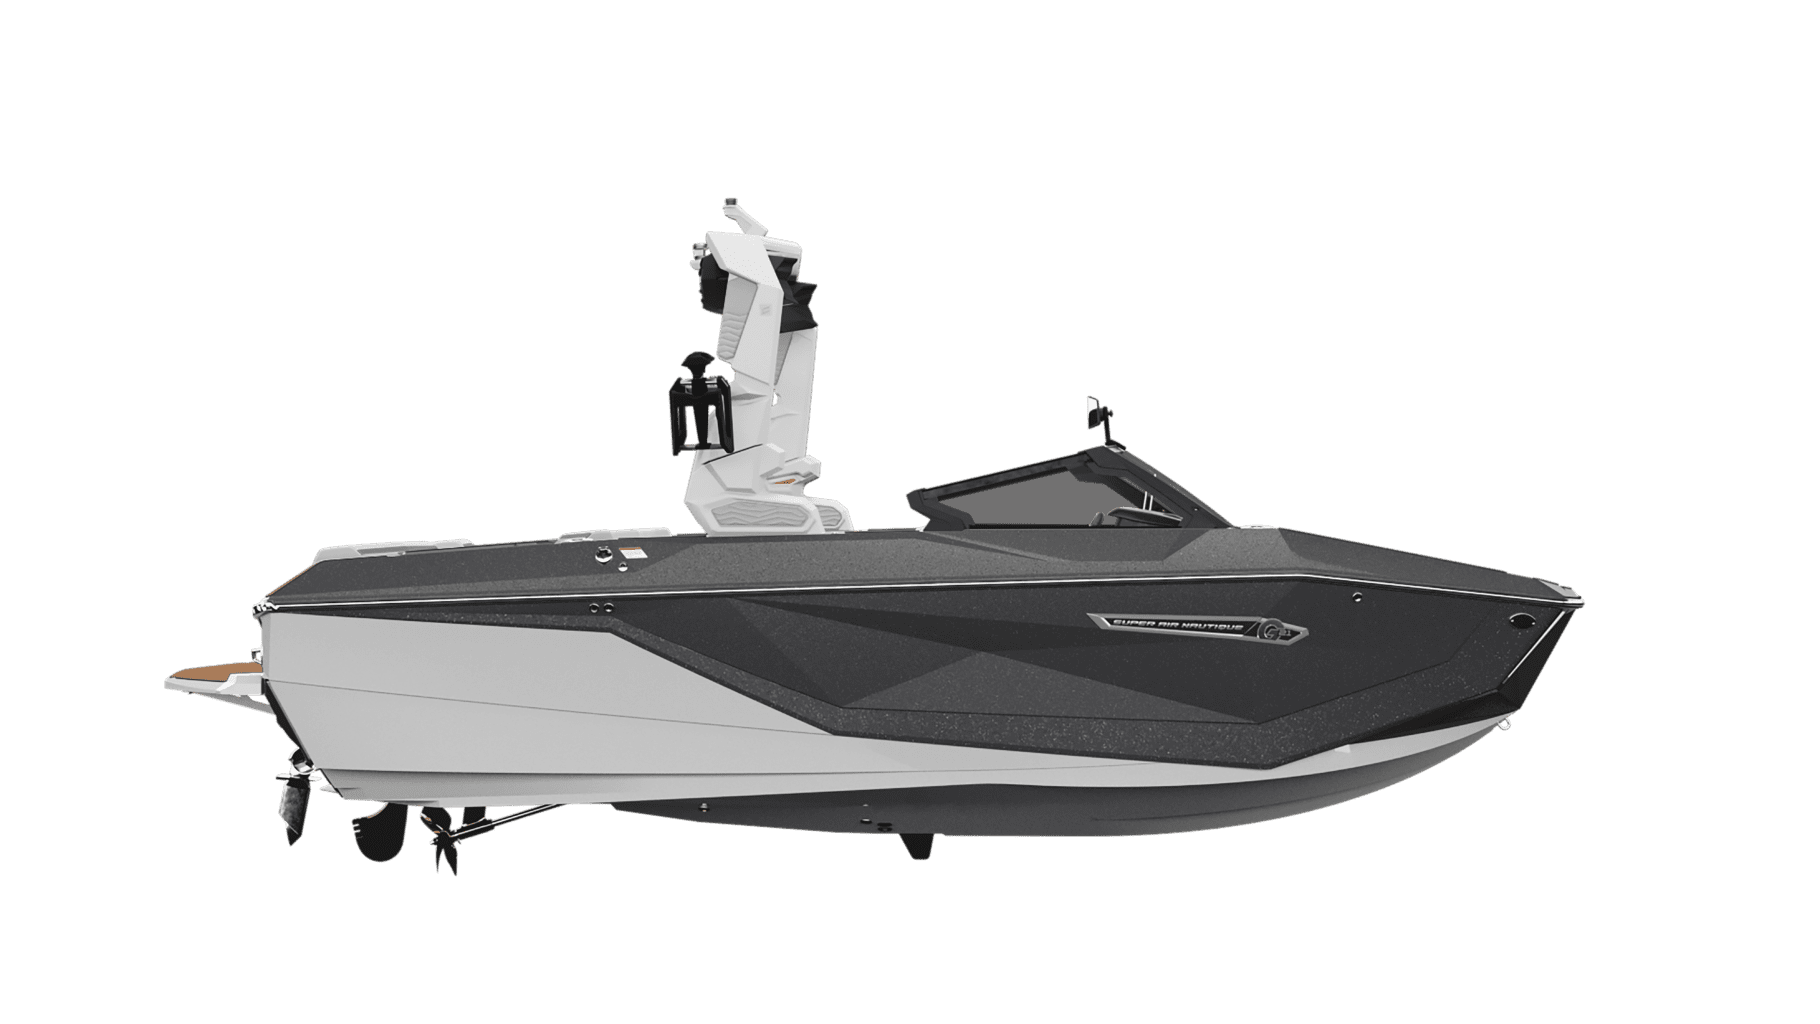 2025 NAUTIQUE G21 סירת וייסרף/וייקבורד - סטרים יאכטות 